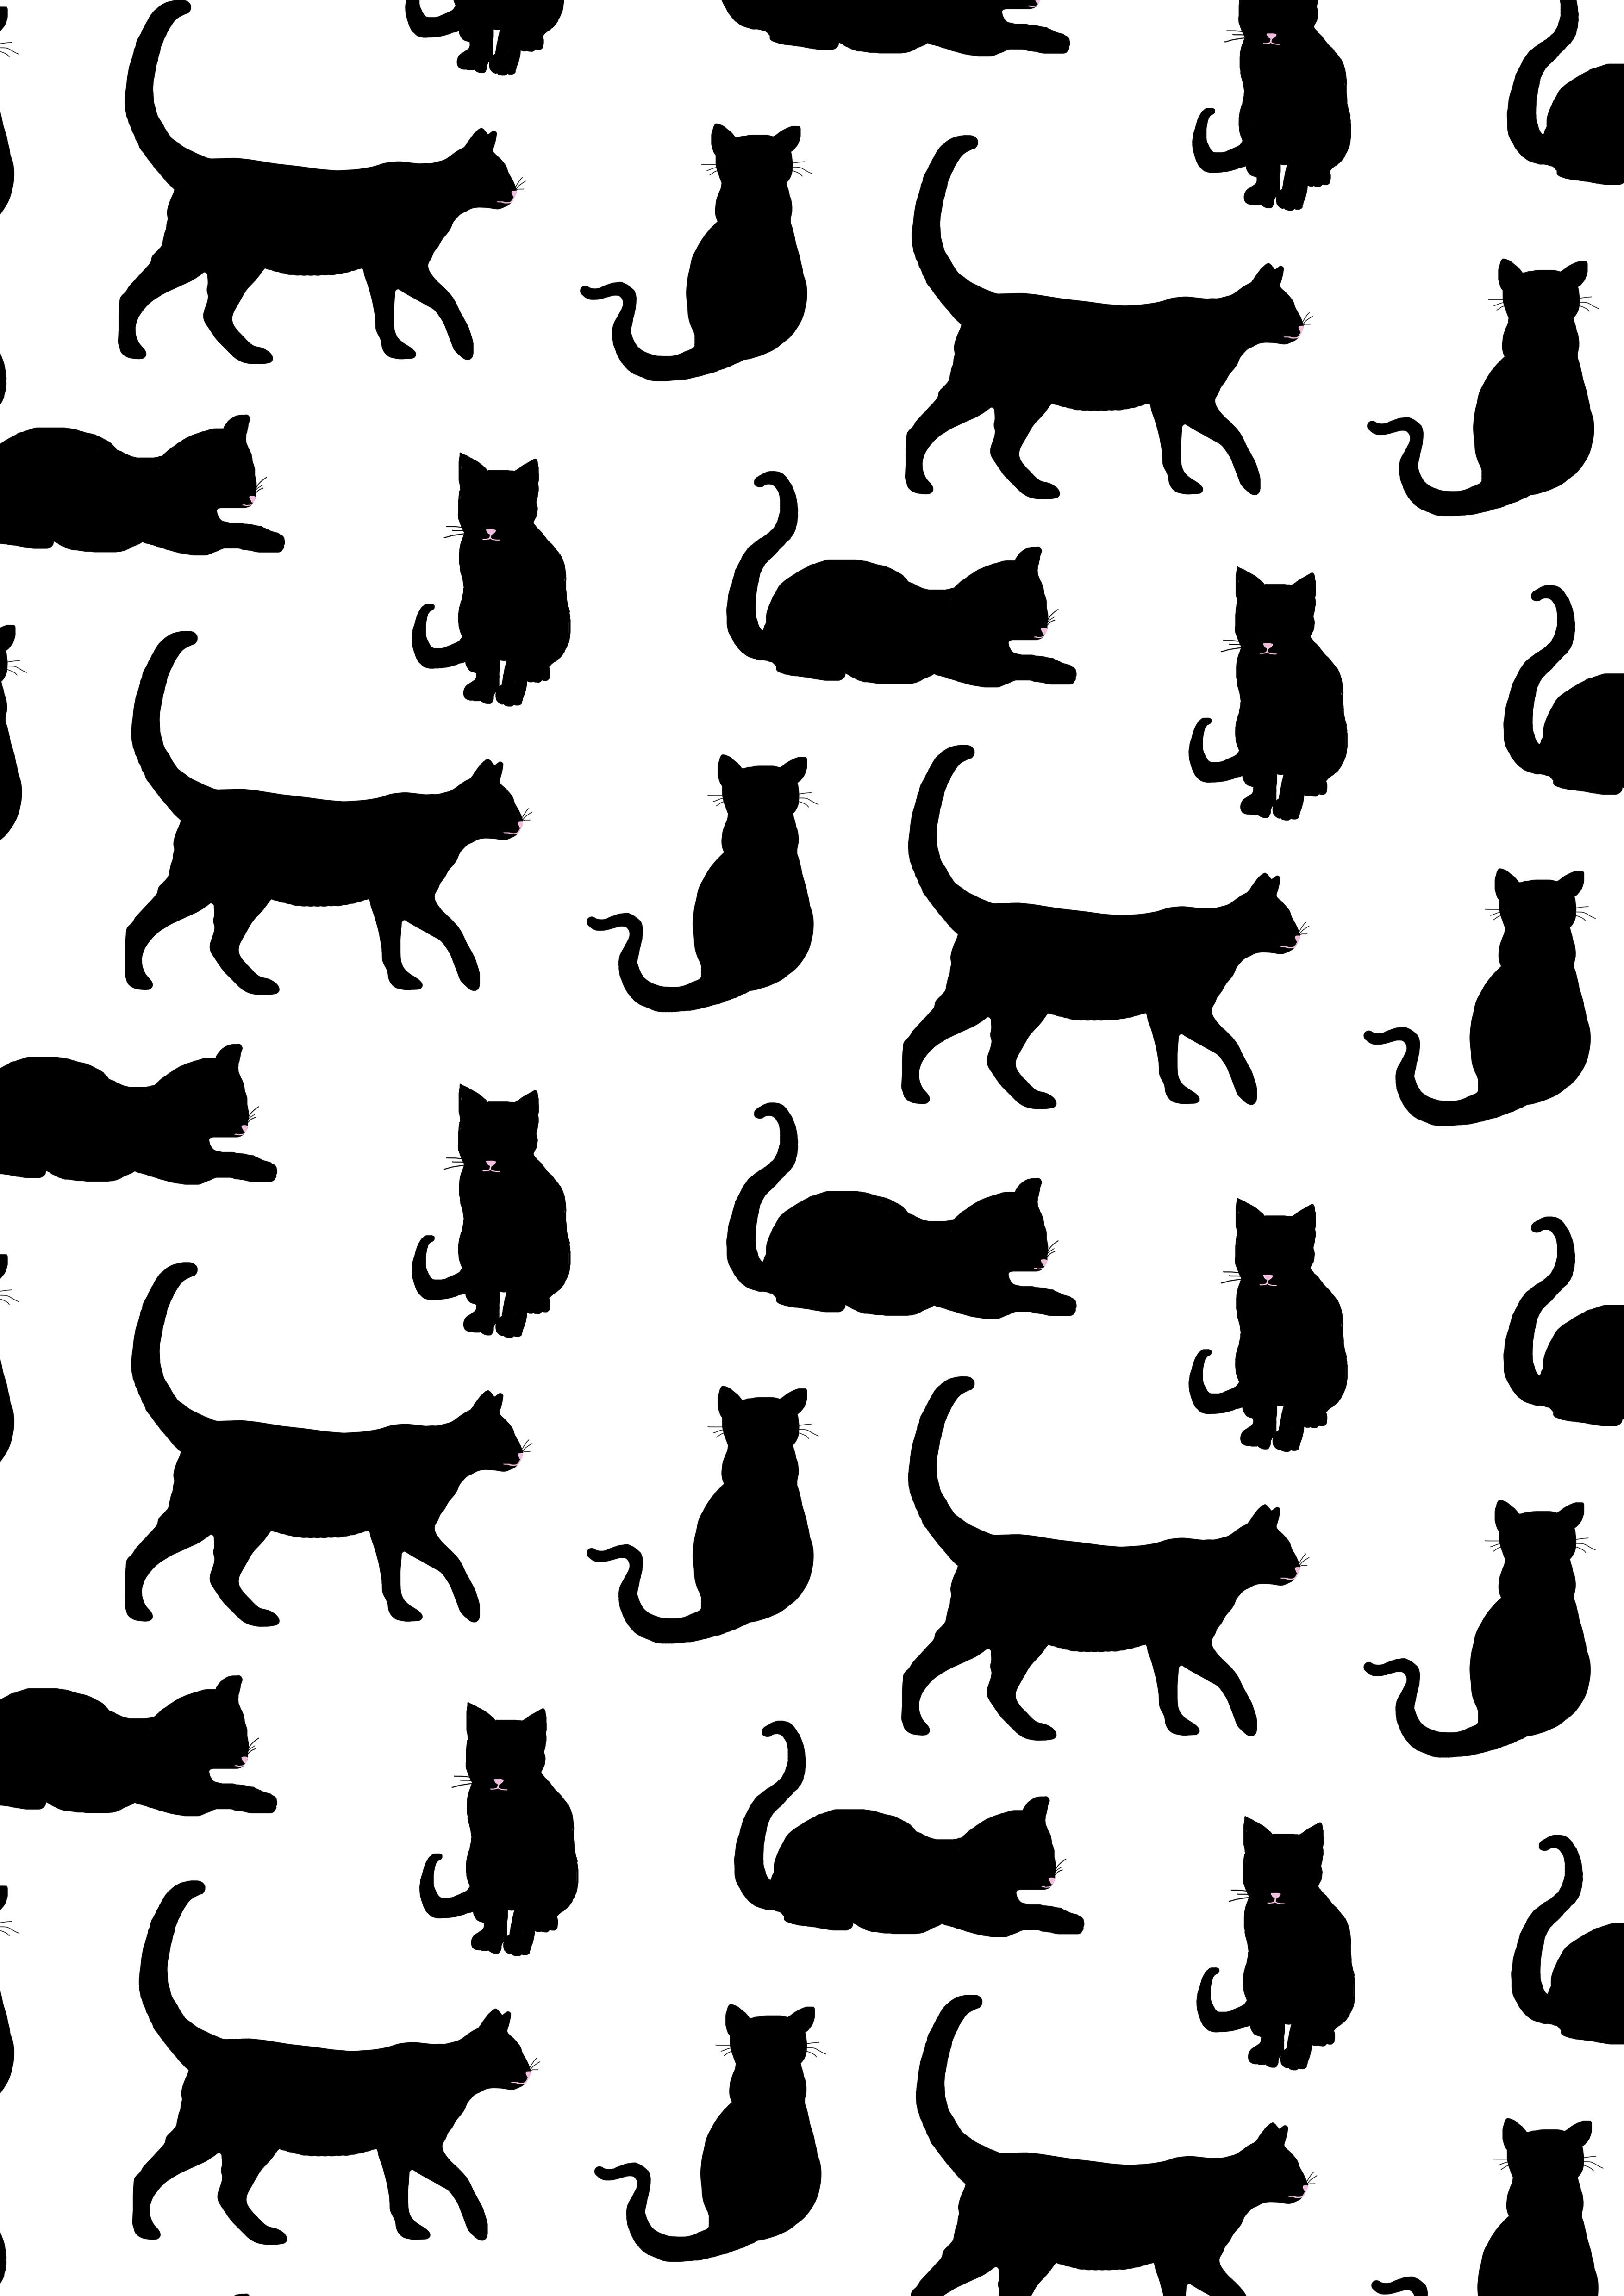 Just Stop Catcalling. Cat wallpaper, Cat design, Cats illustration